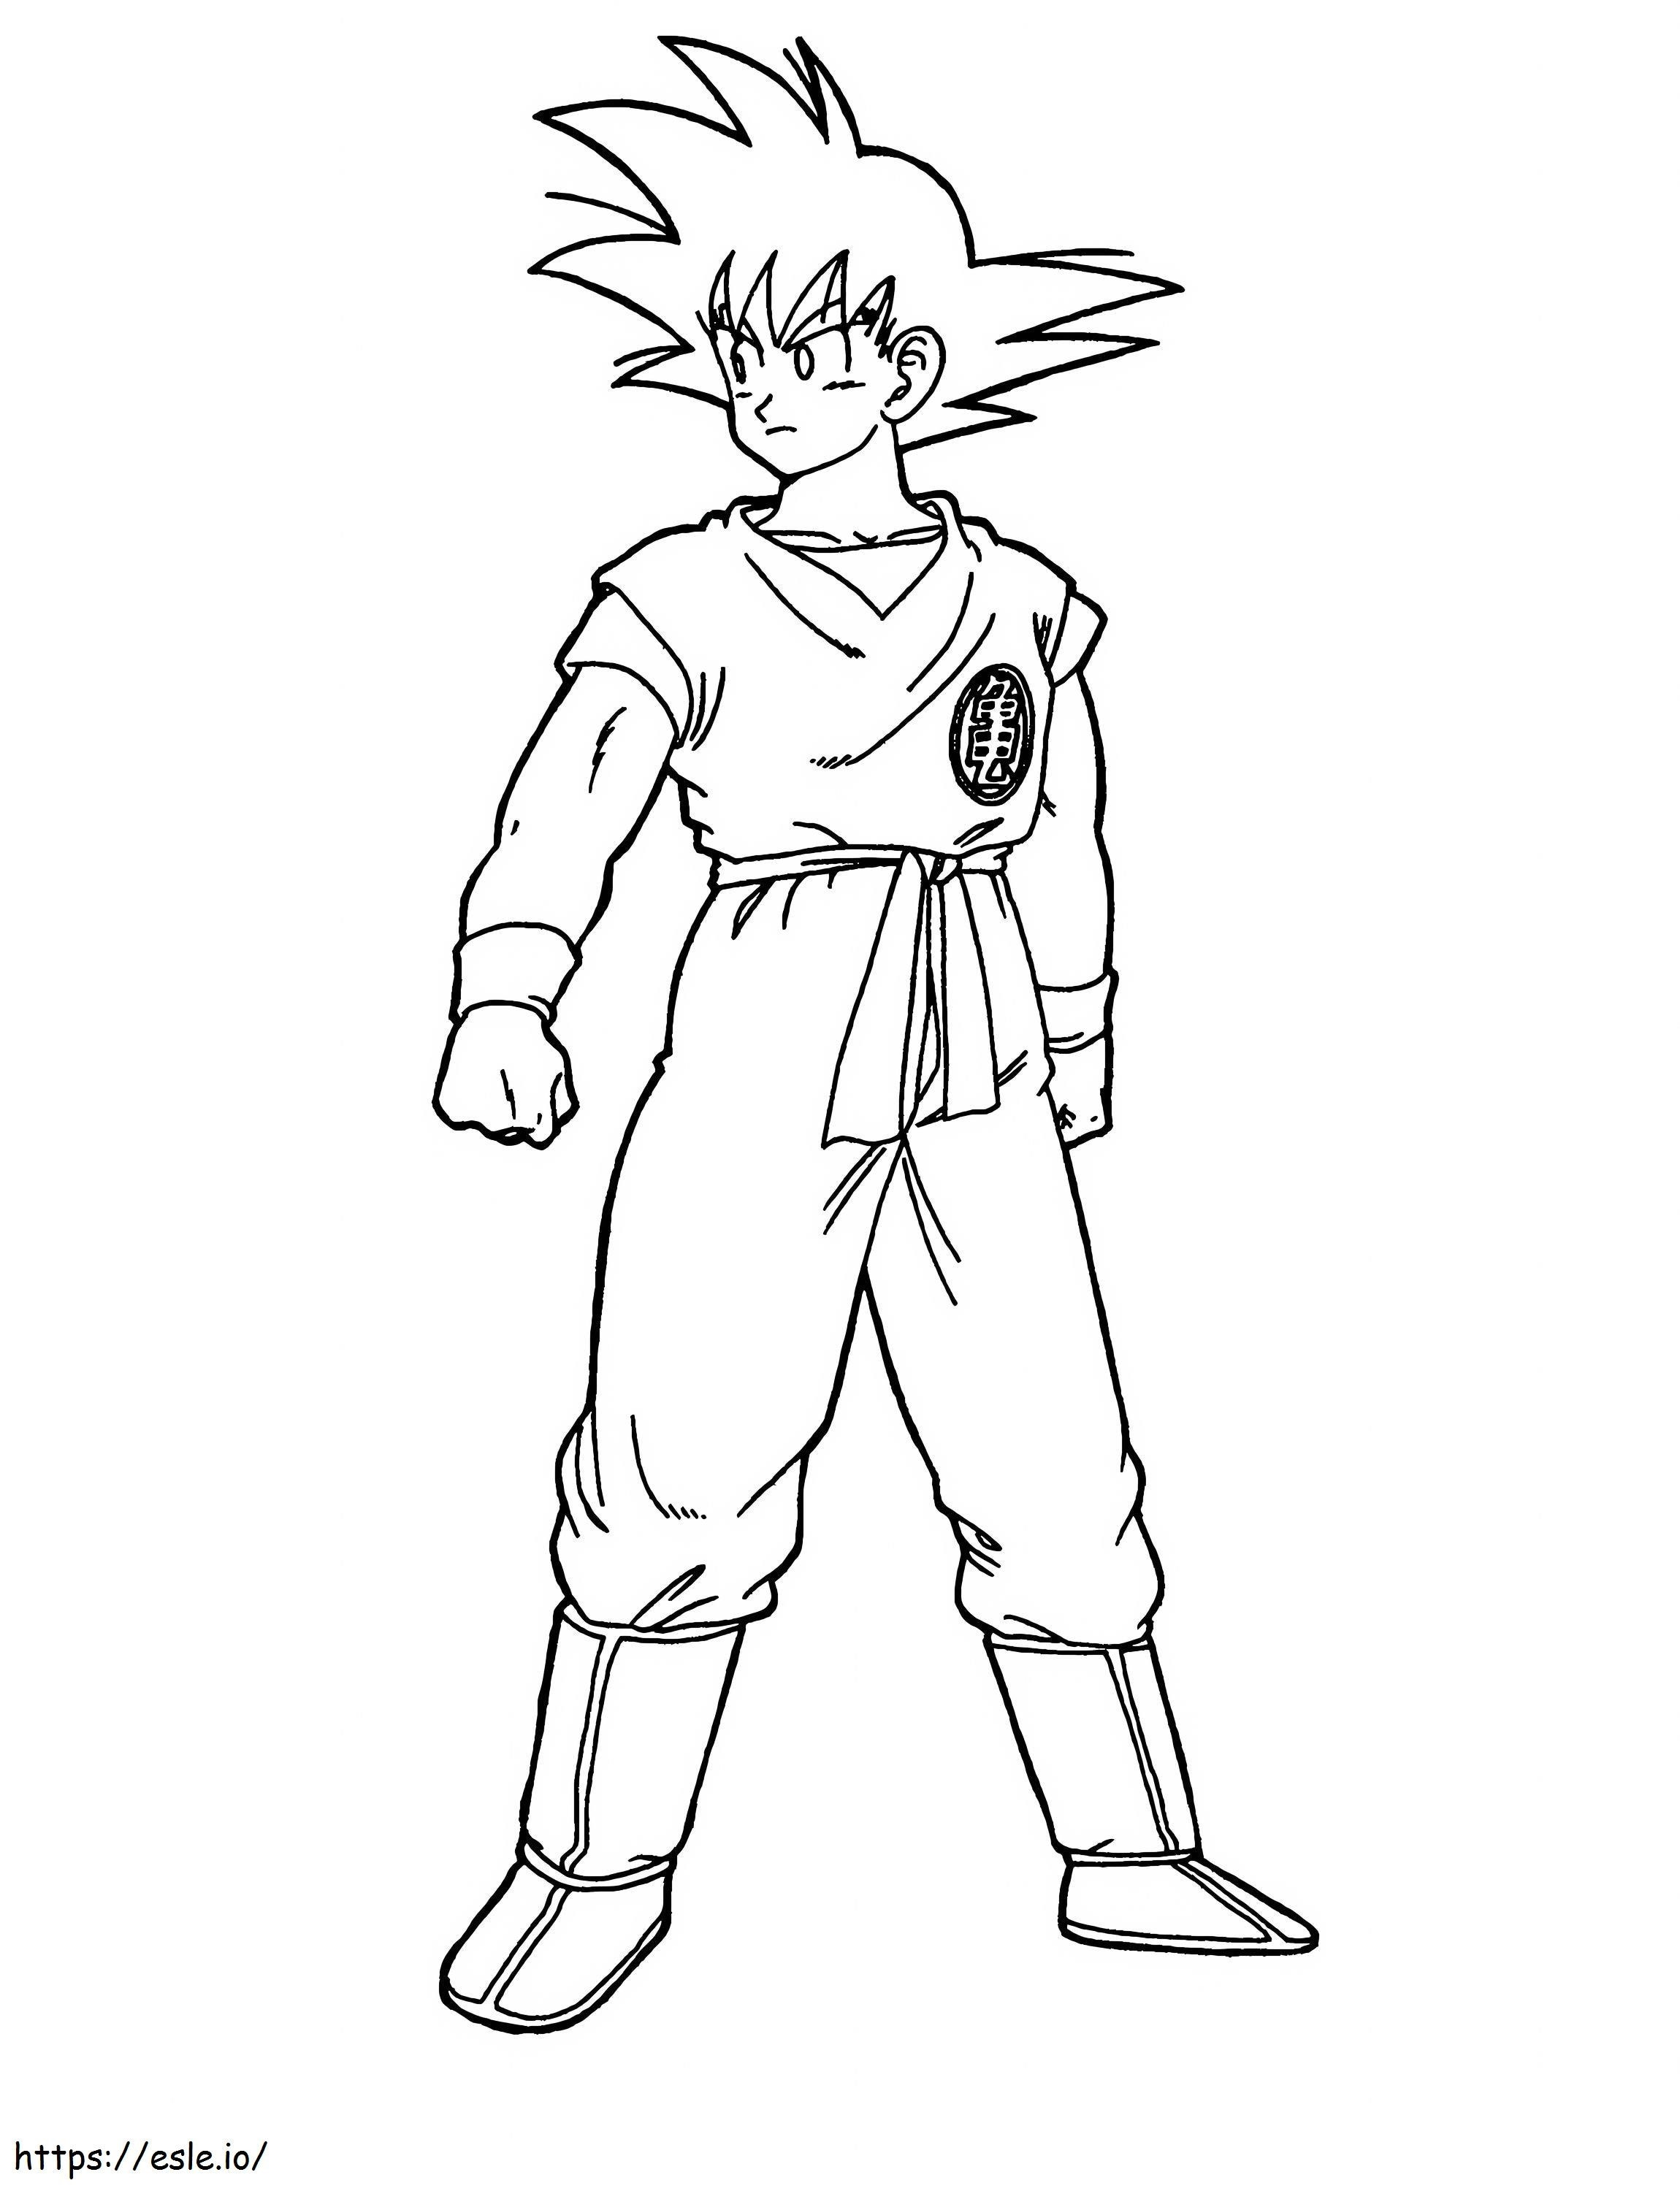 Goku De Pie coloring page